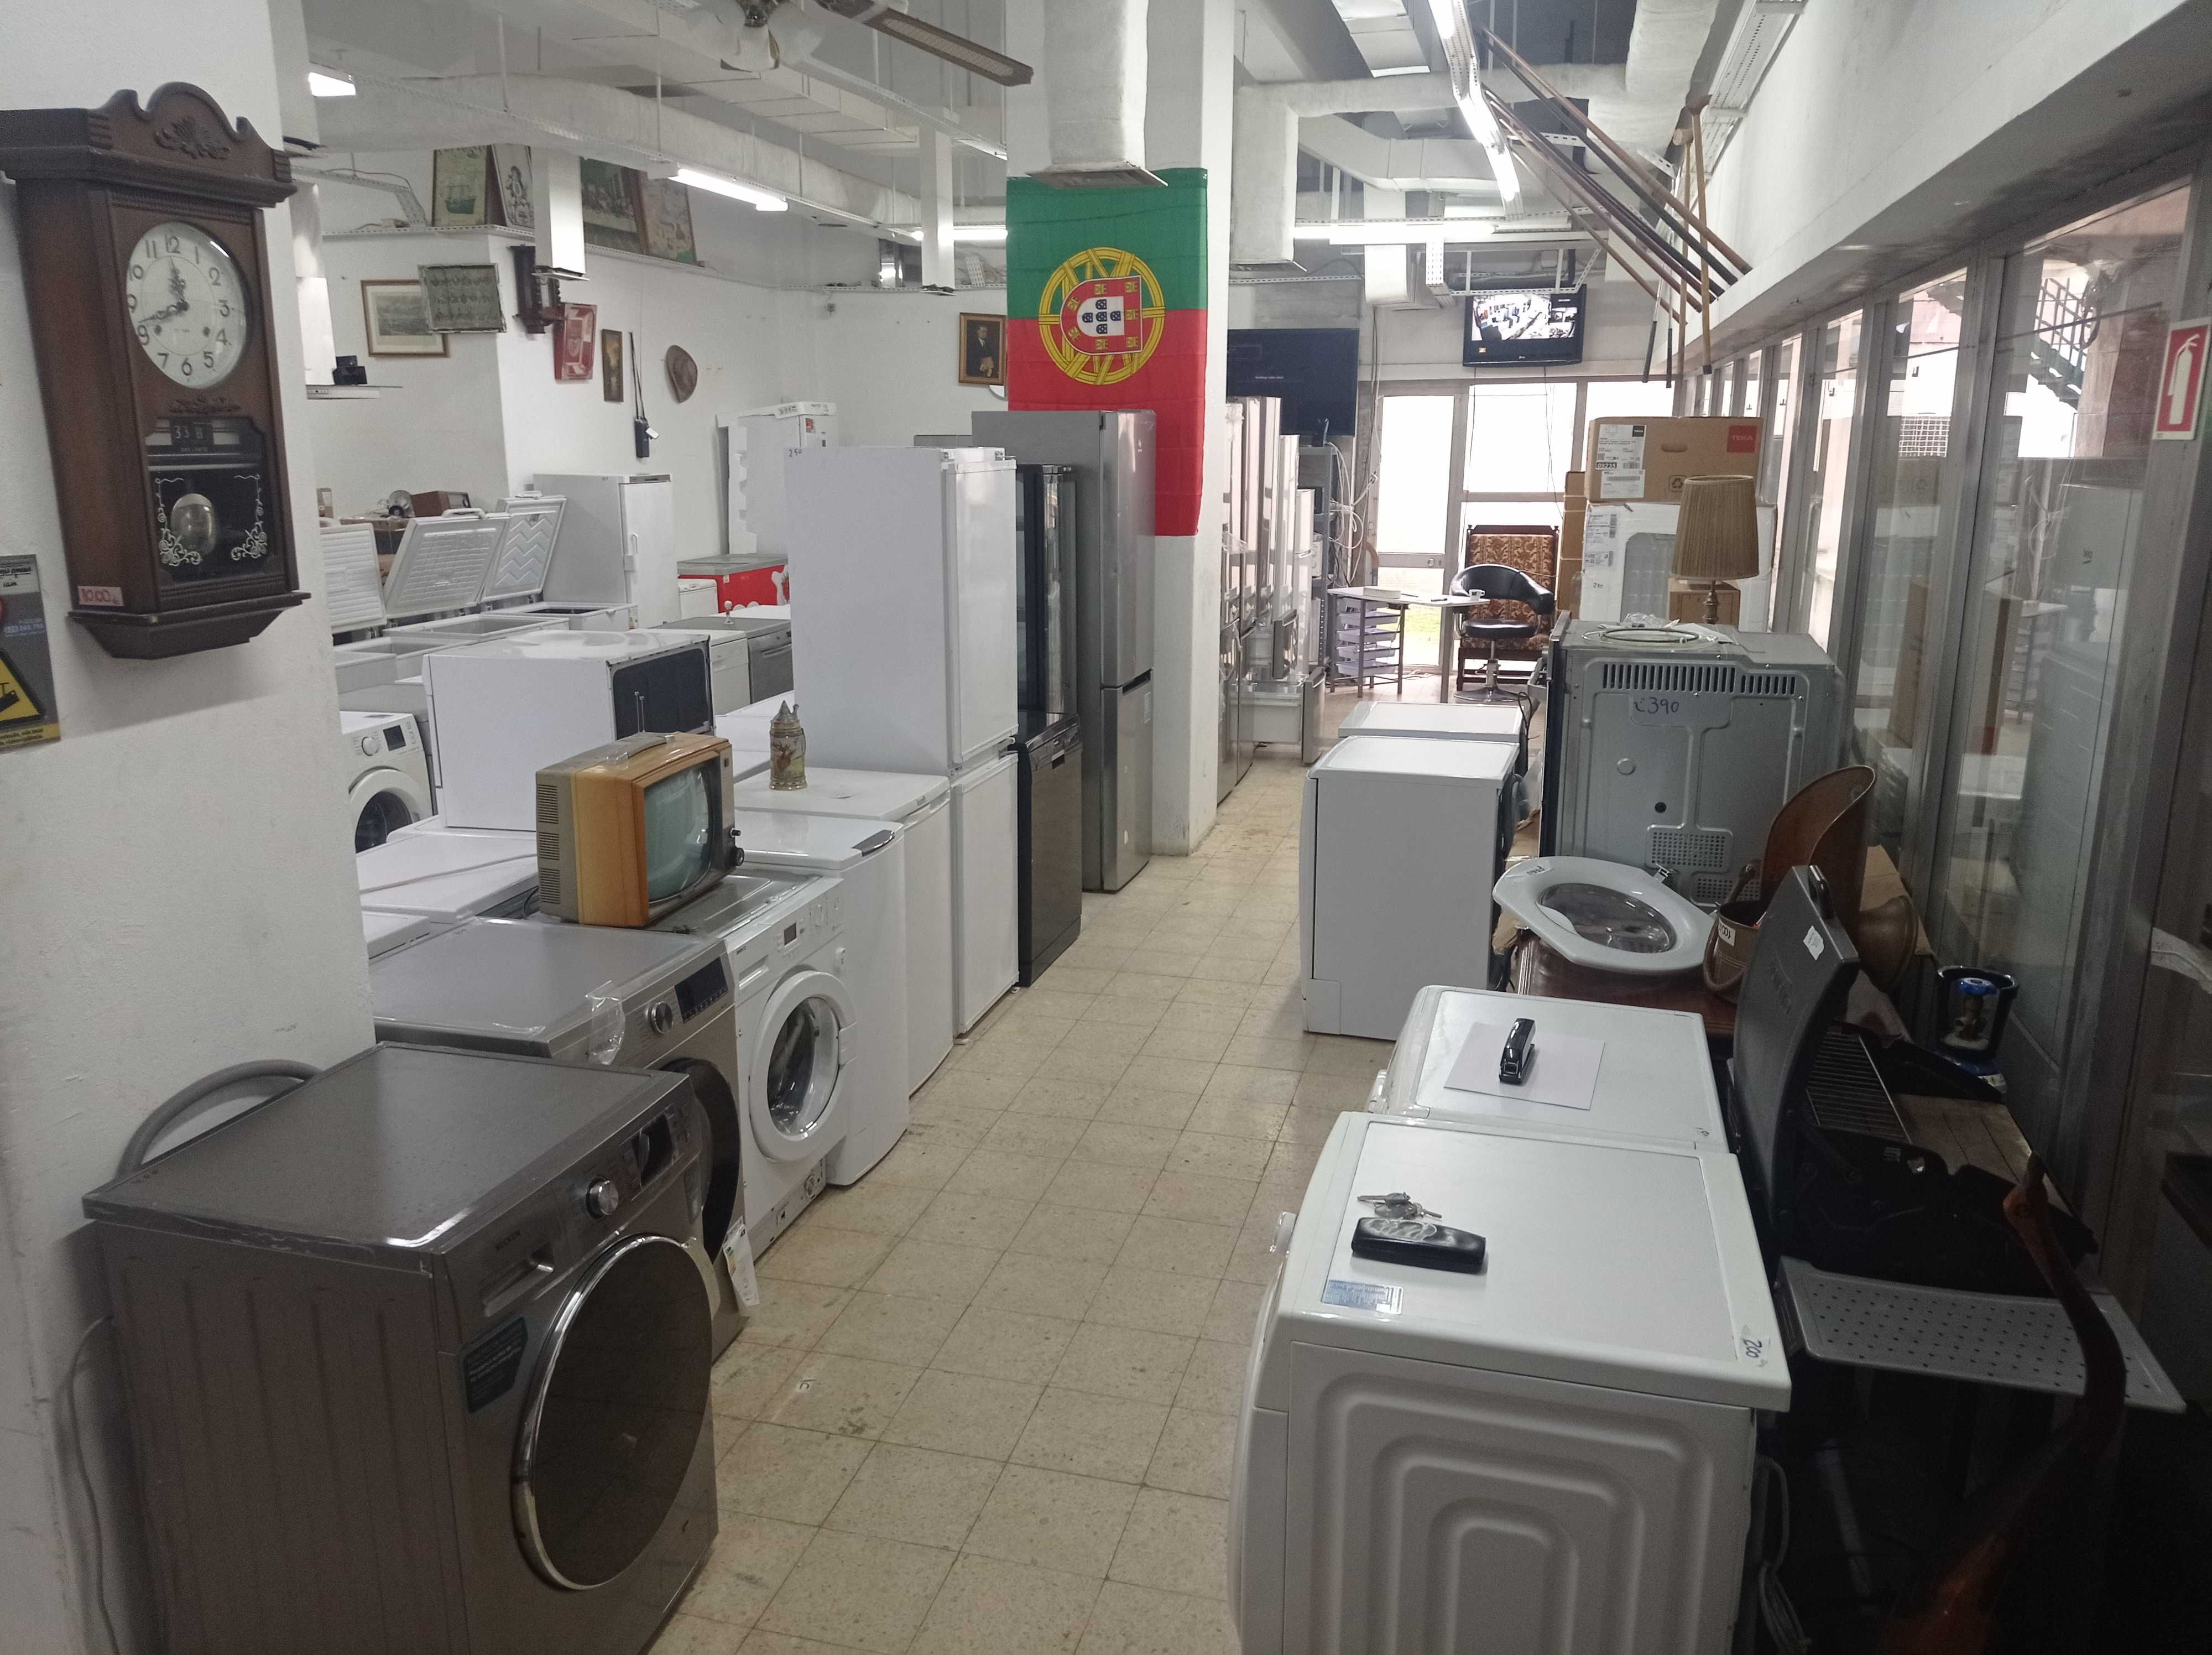 Várias máquinas de lavar roupa e loiça